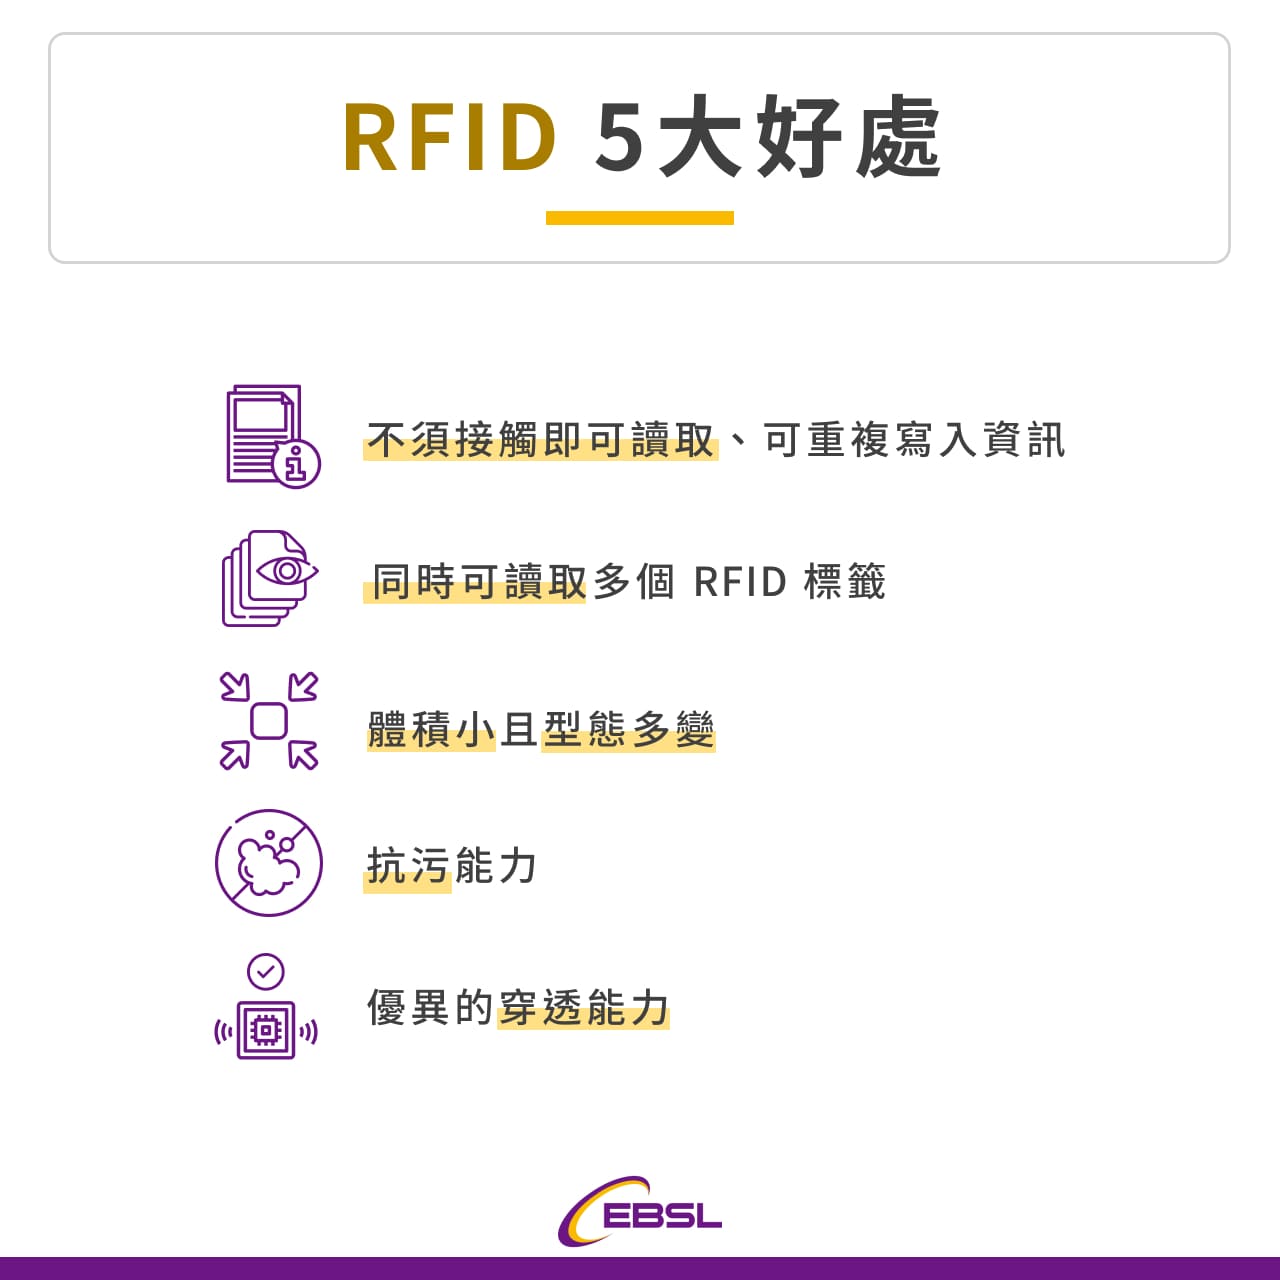 RFID 5 大好處